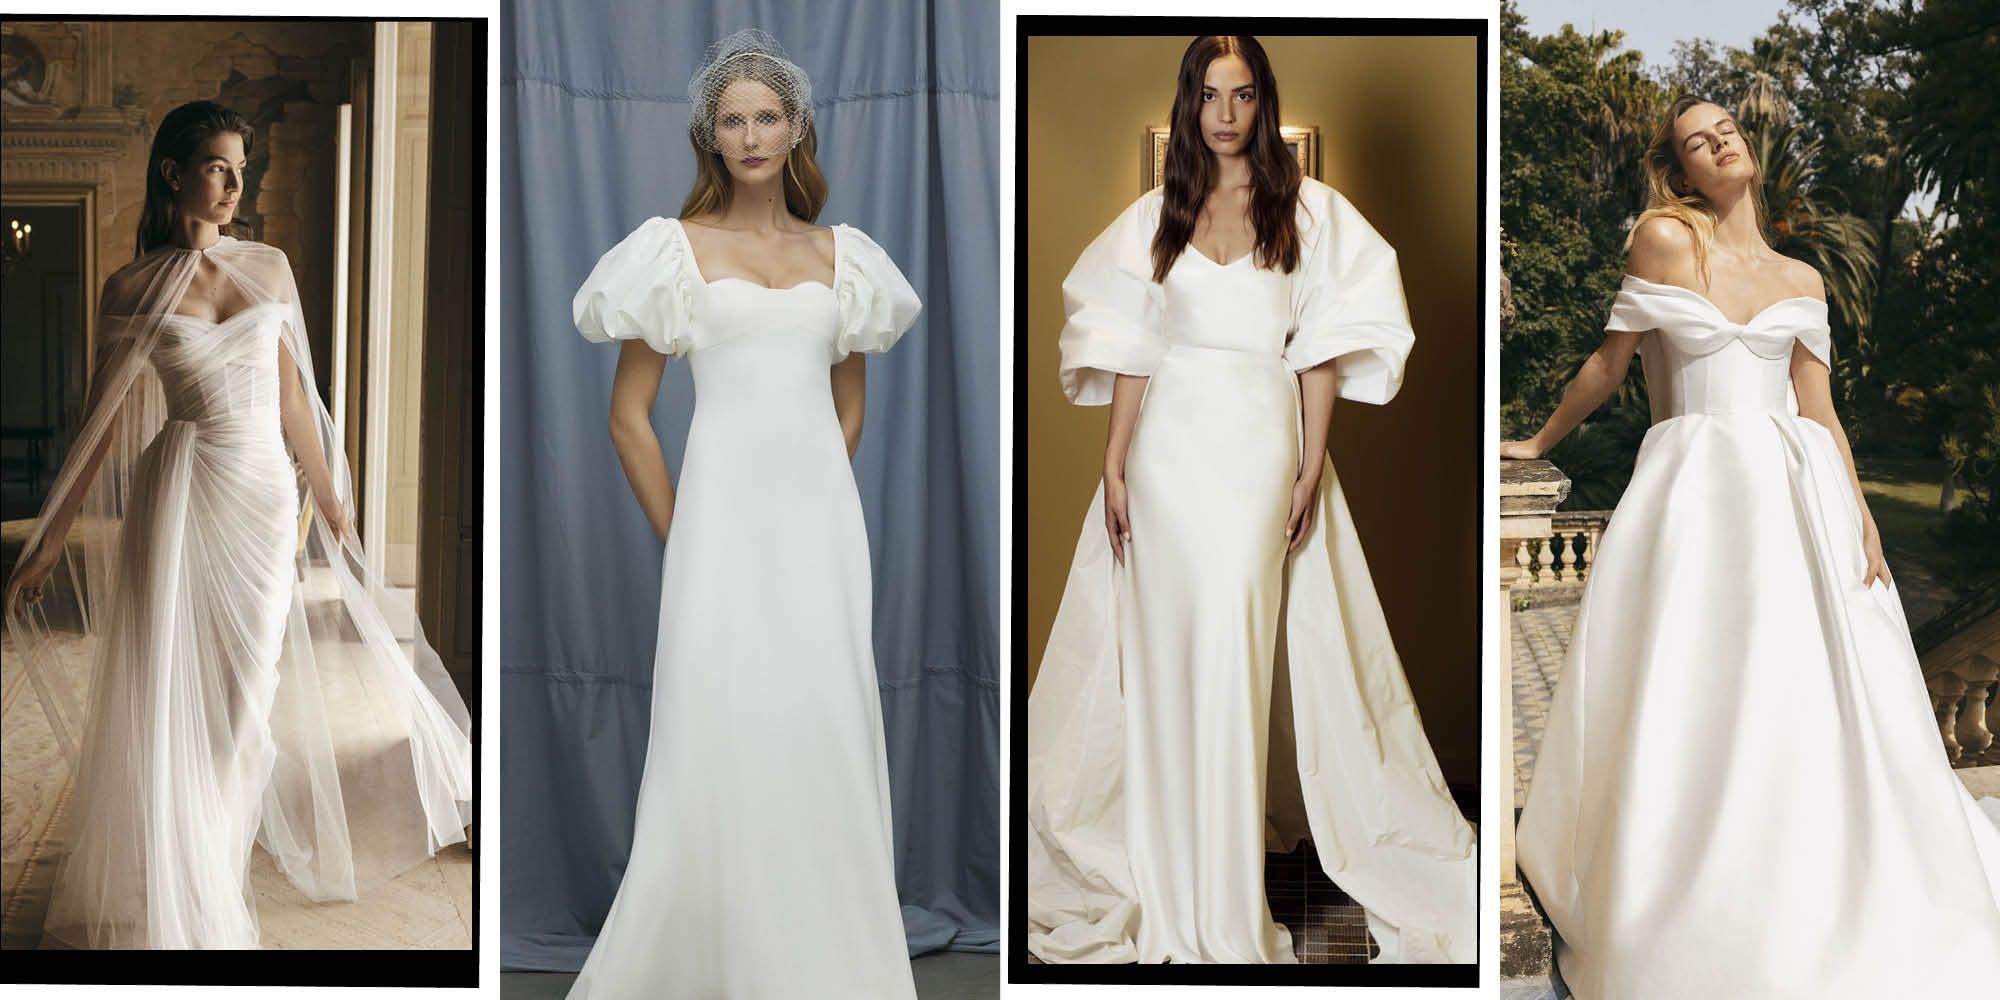 Wedding Dress Shopping Tips From an Expert - Lulus.com Fashion Blog